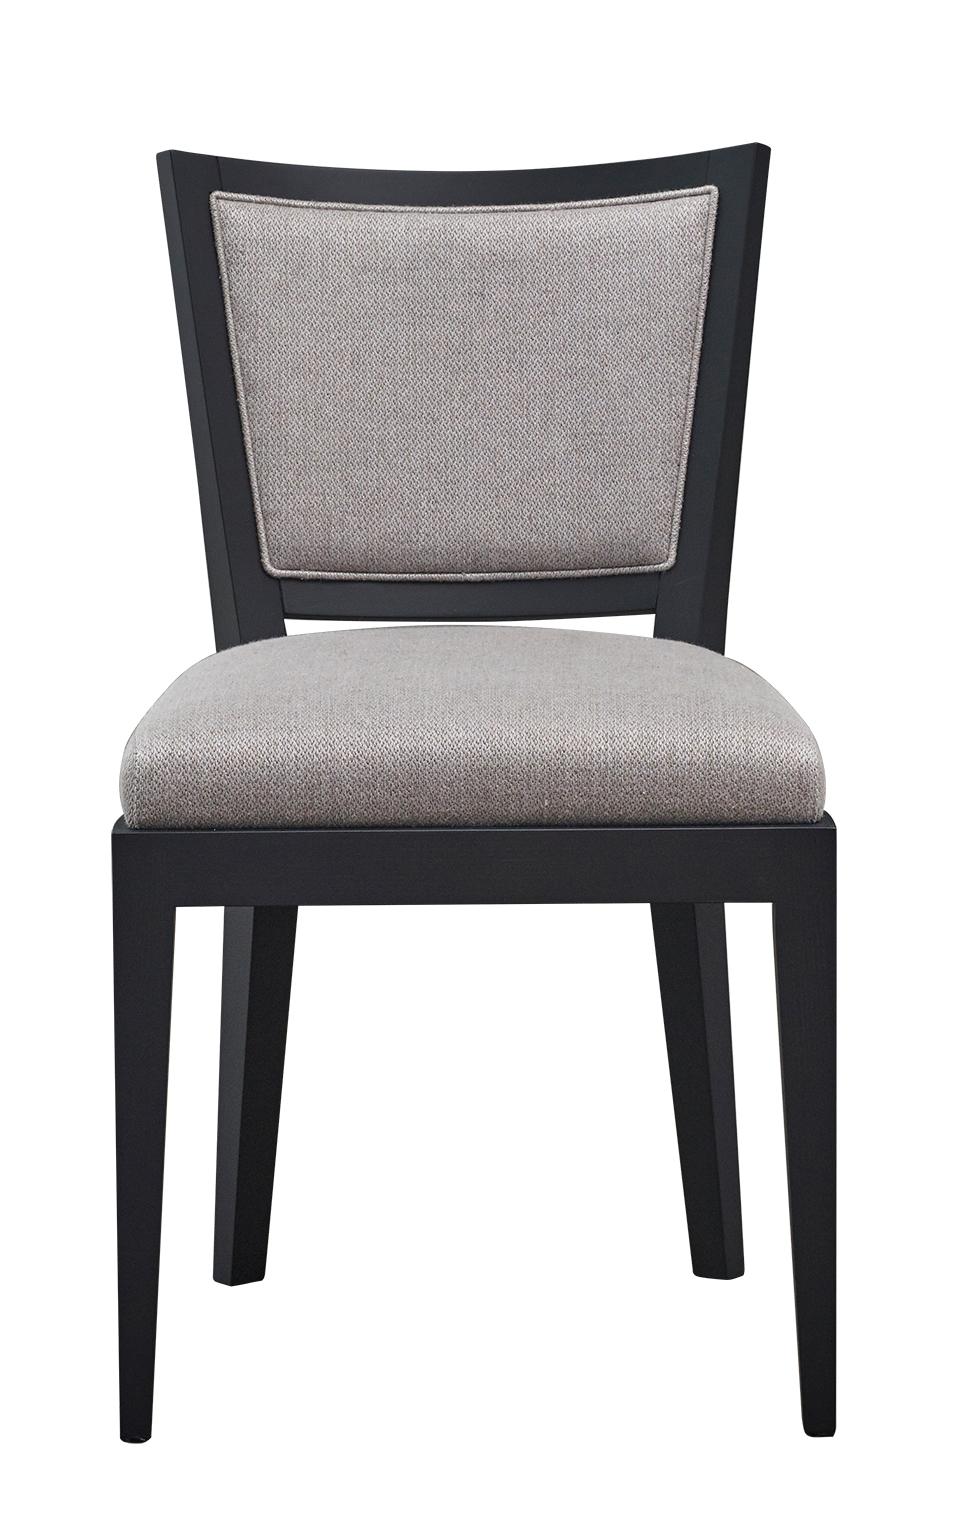 Caffè&amp;amp;nbsp;— деревянный обеденный стул с соломенной спинкой и сиденьем, обитым тканью или кожей, из каталога Promemoria | Promemoria